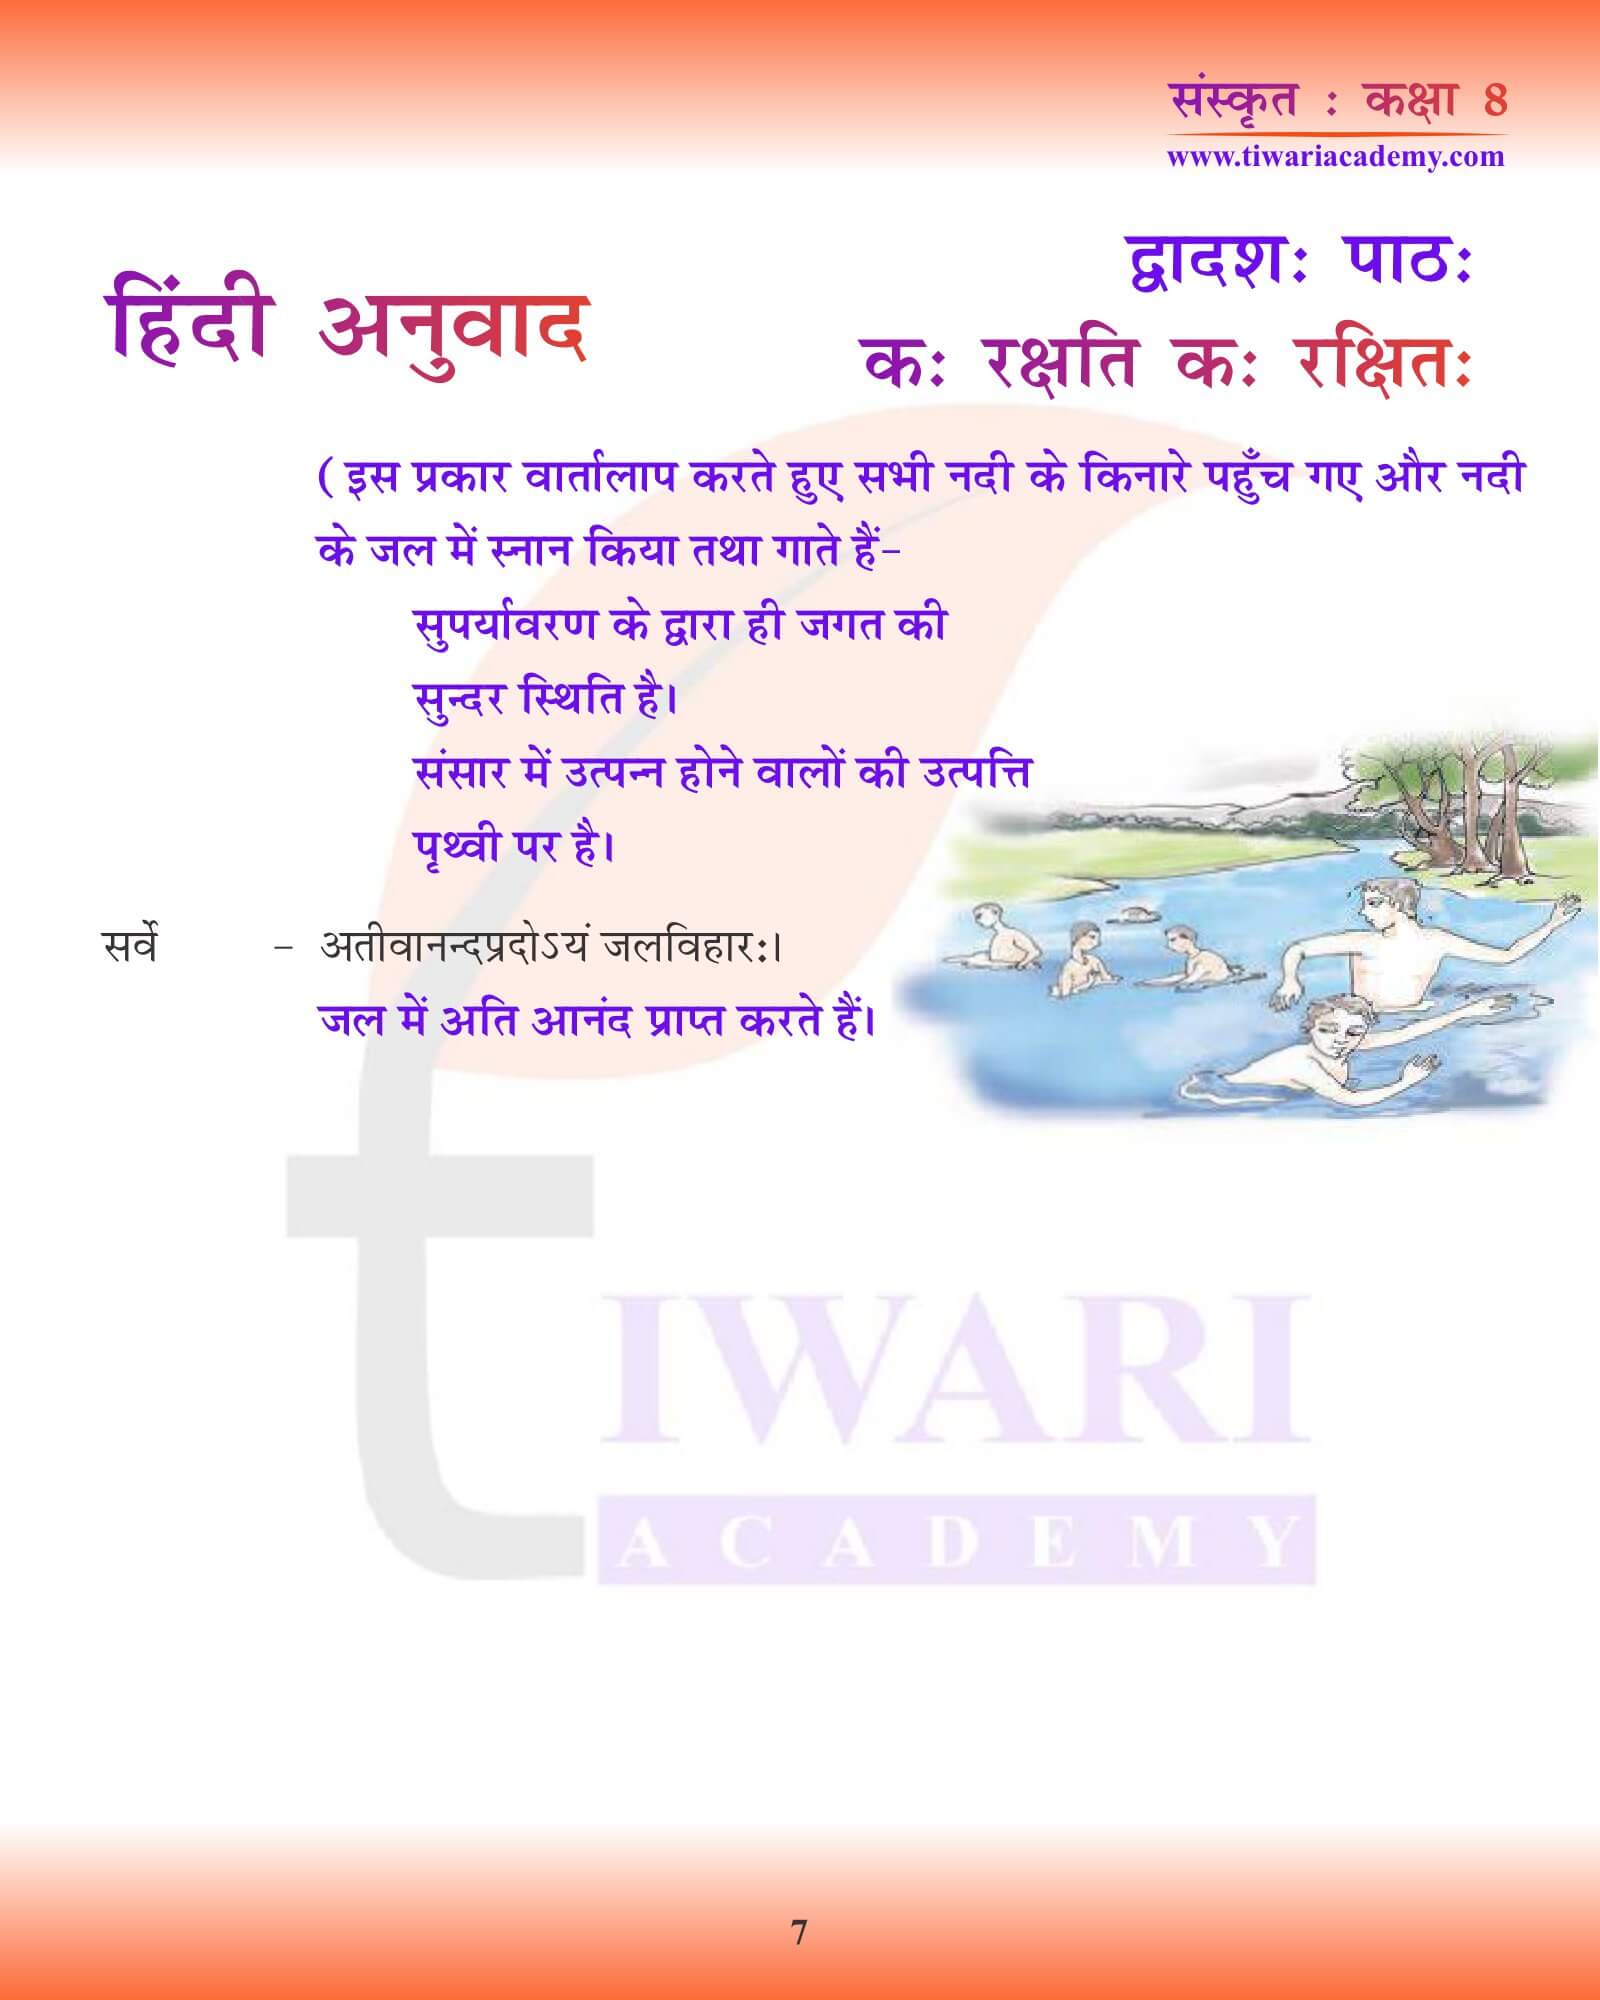 कक्षा 8 संस्कृत अध्याय 12 हिंदी में गाइड